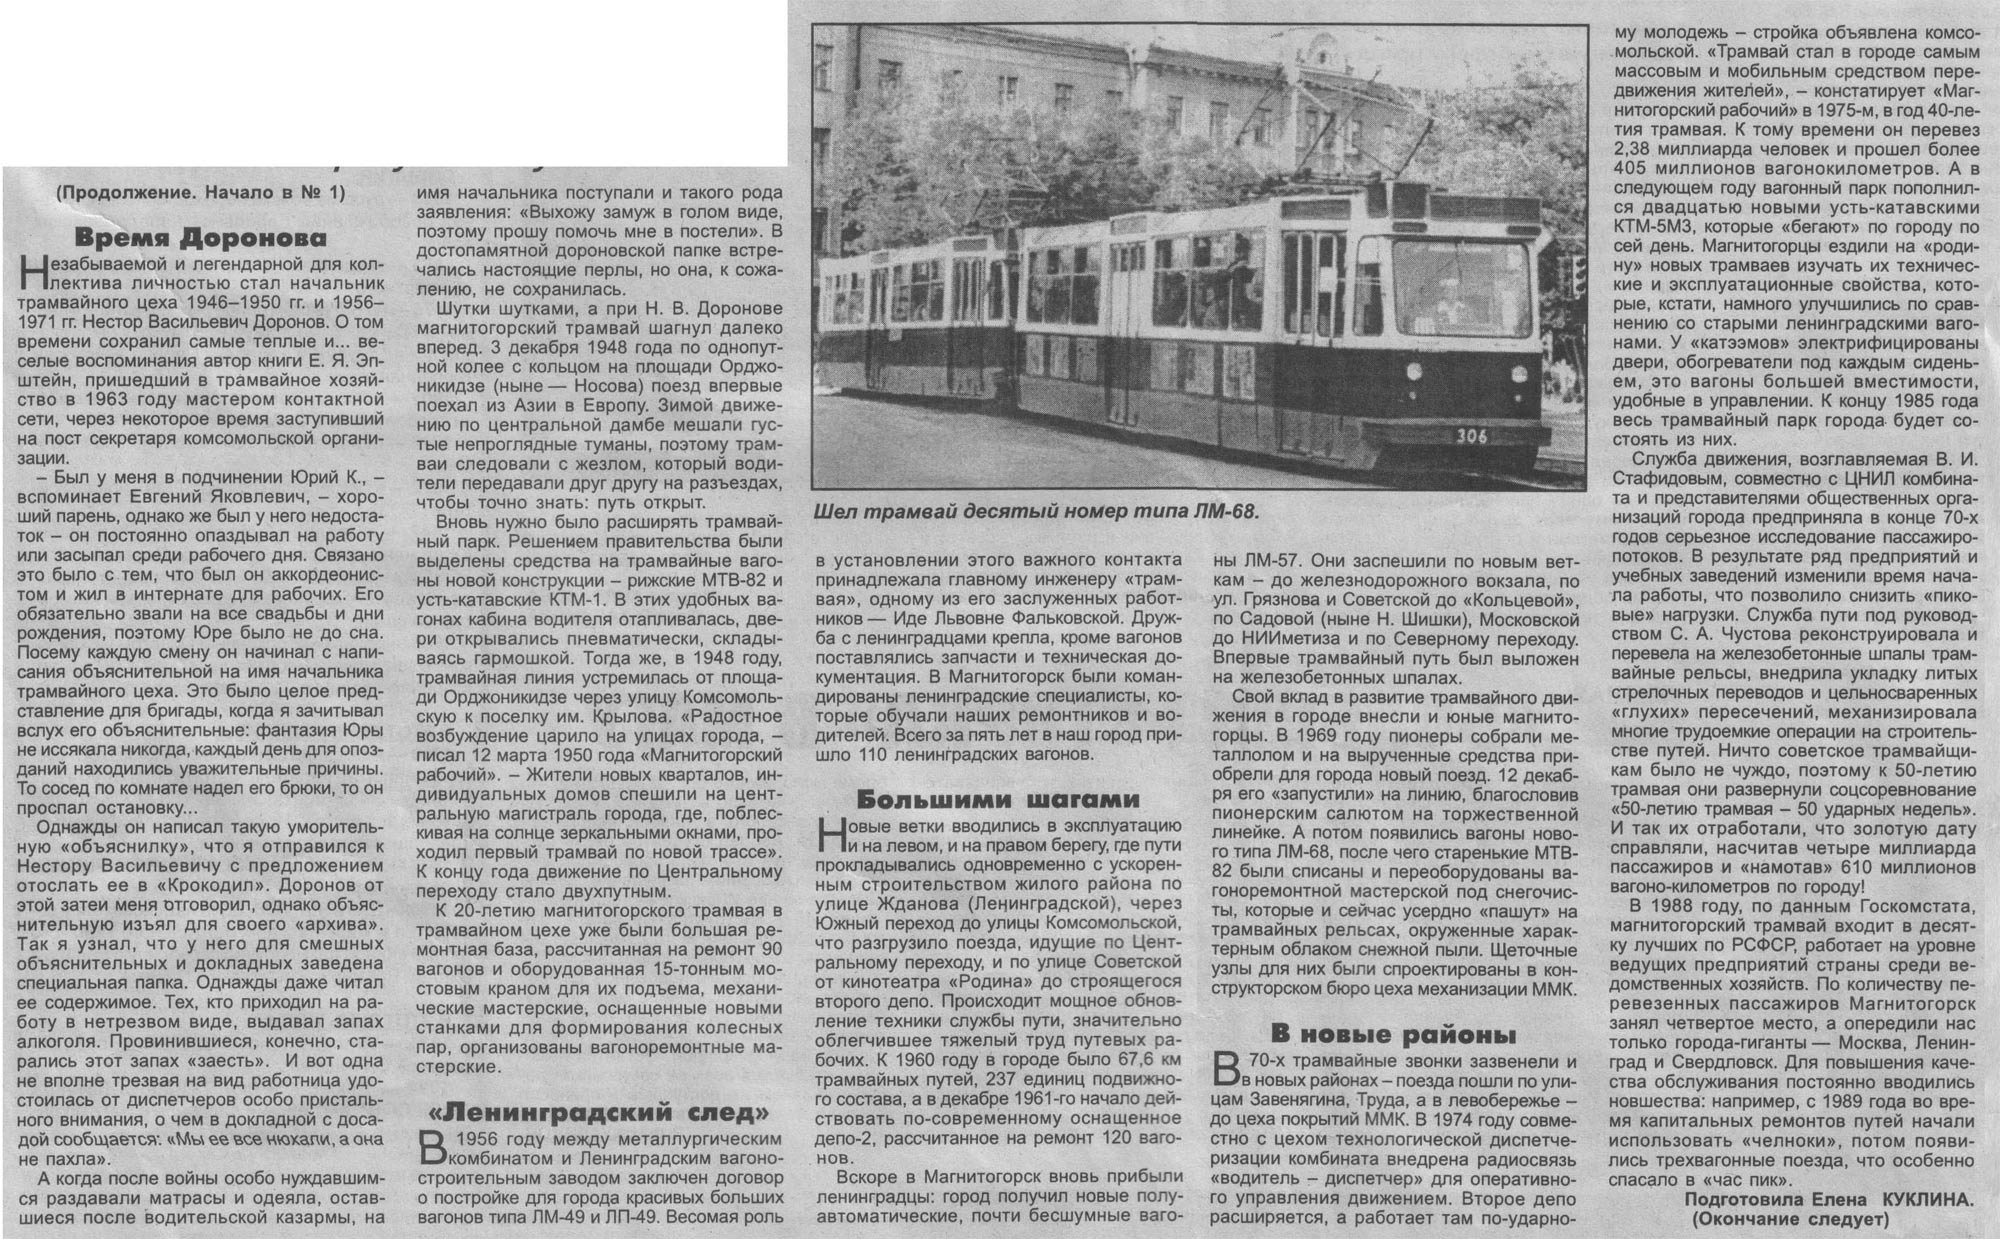 В первом трамвае было в 3 раза. Магнитогорск трамвай 1935. Магнитогорск трамвай трехвагонный. Первый Магнитогорский трамвай. Схема трамвайных линий Магнитогорска.